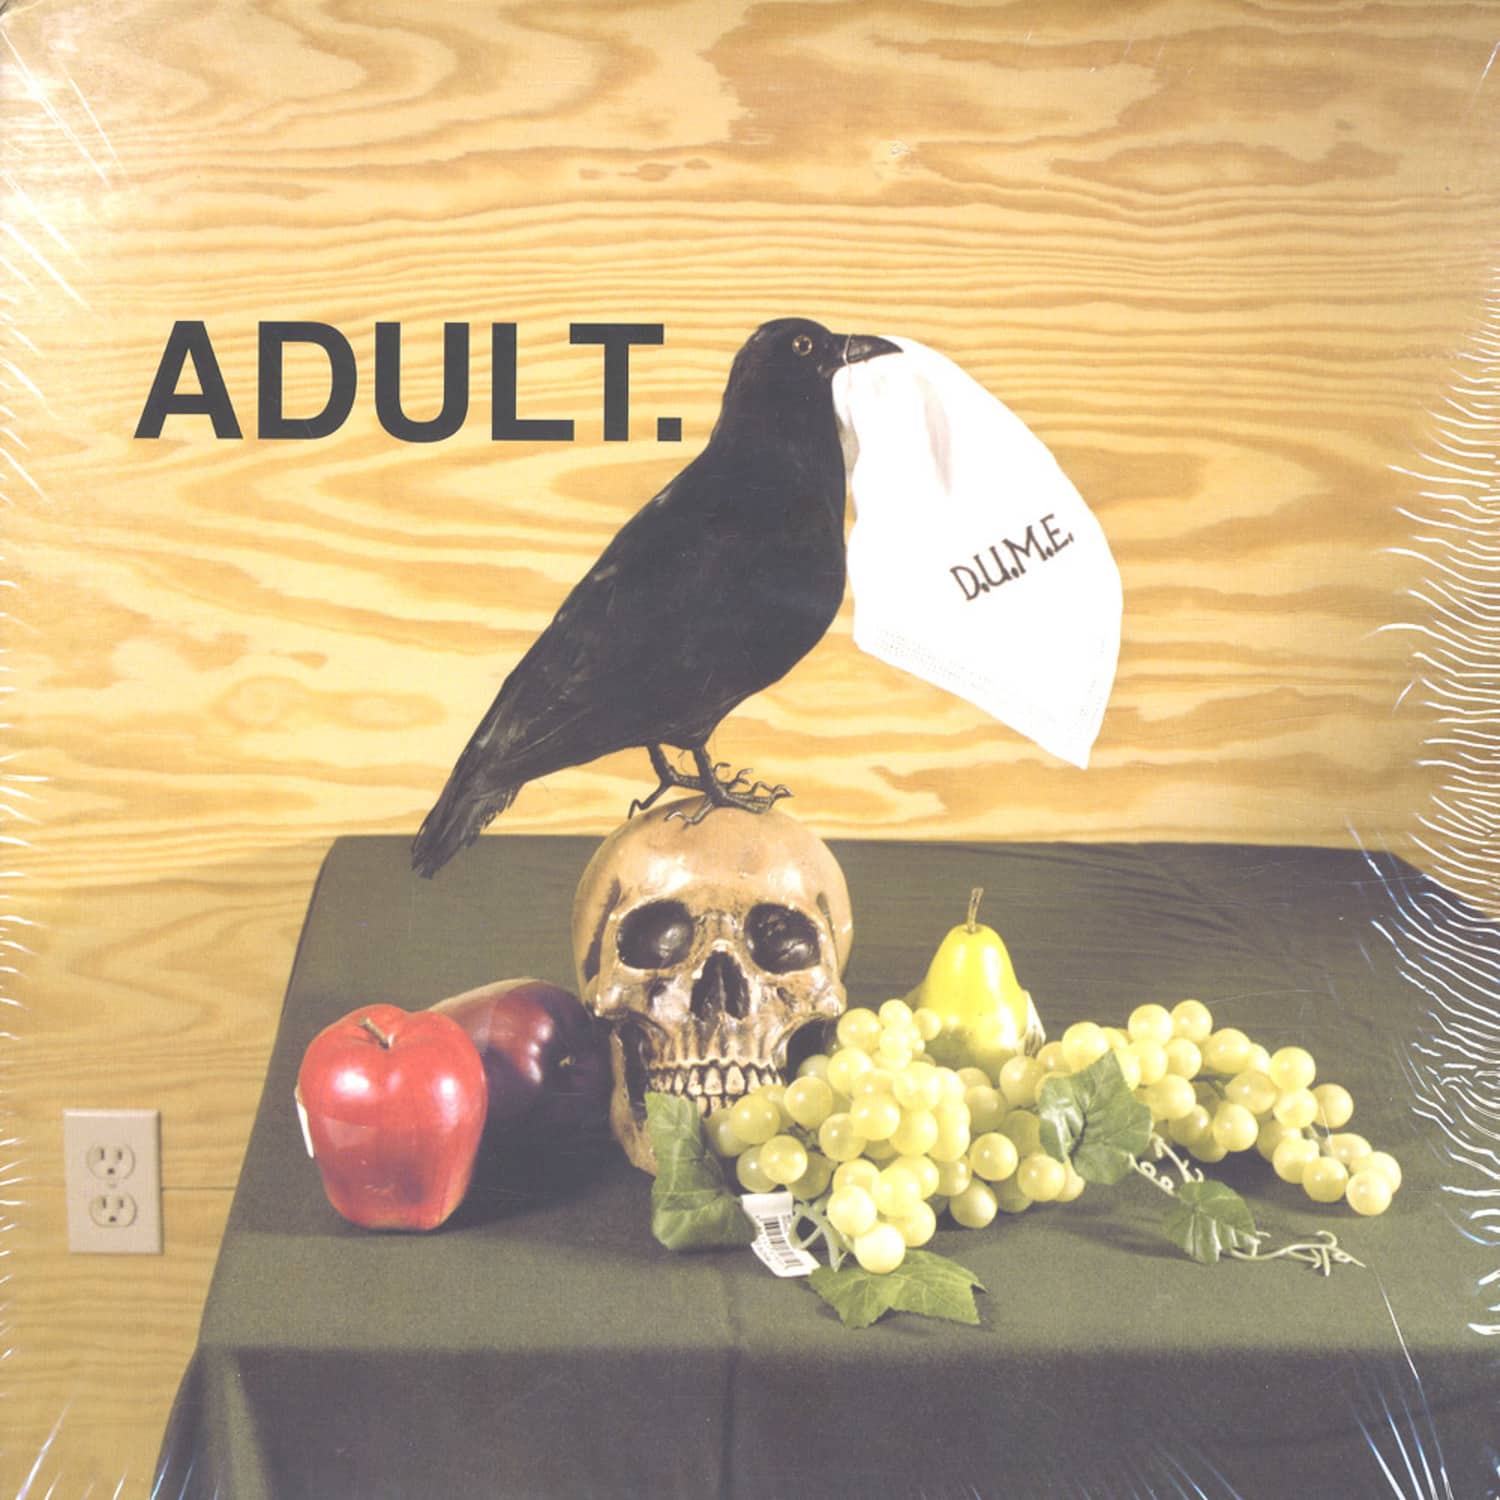 Adult - D.U.M.E.